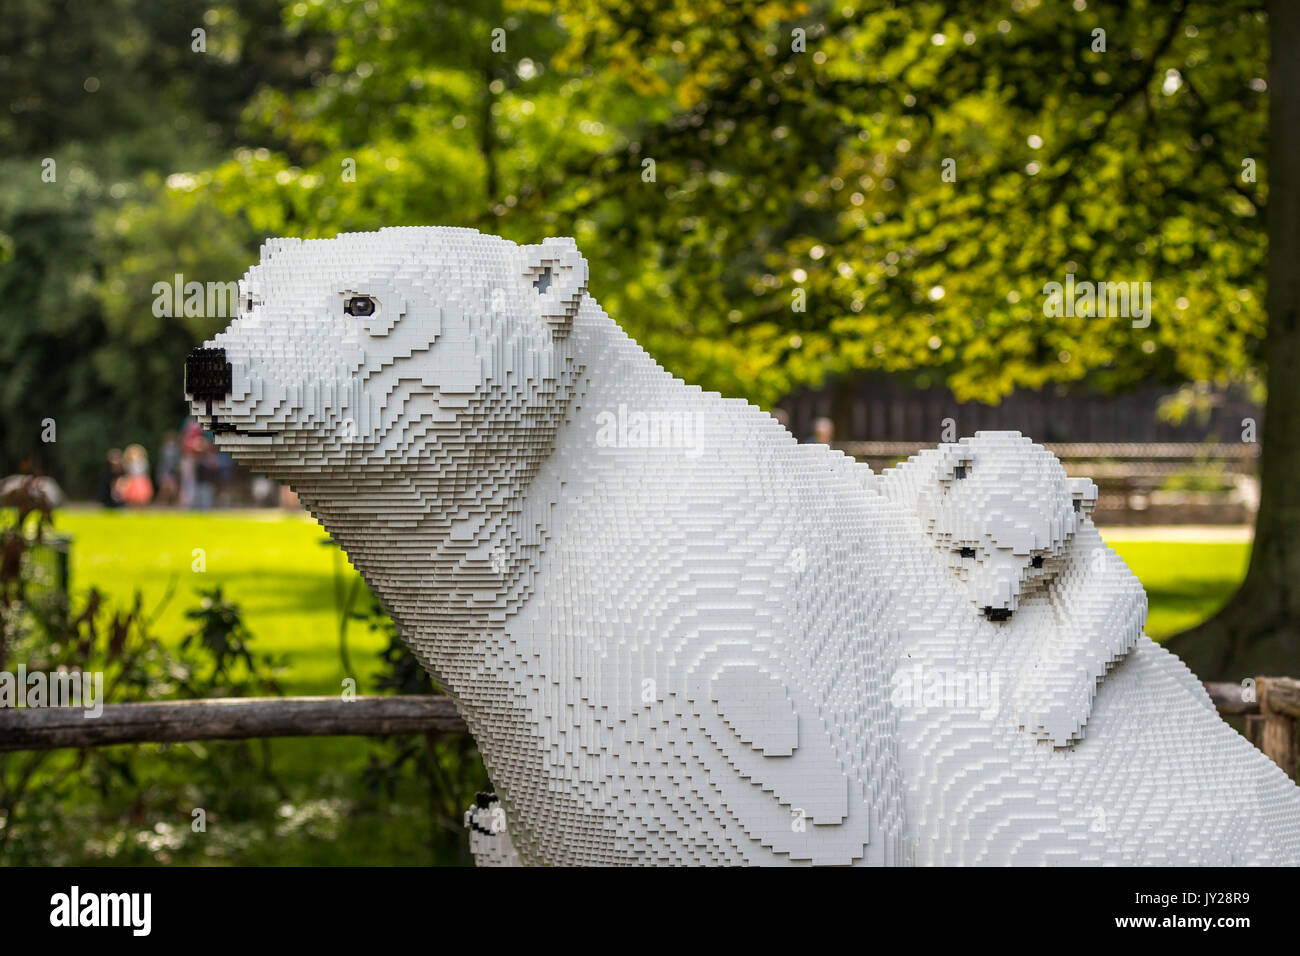 Planckendael Zoo, Mechelen, Belgien - 17. AUGUST 2017: Weiße Eisbär und Baby Bär aus Lego Steinen in der Ausstellung "die Natur verbindet" von Sean Kenney Stockfoto